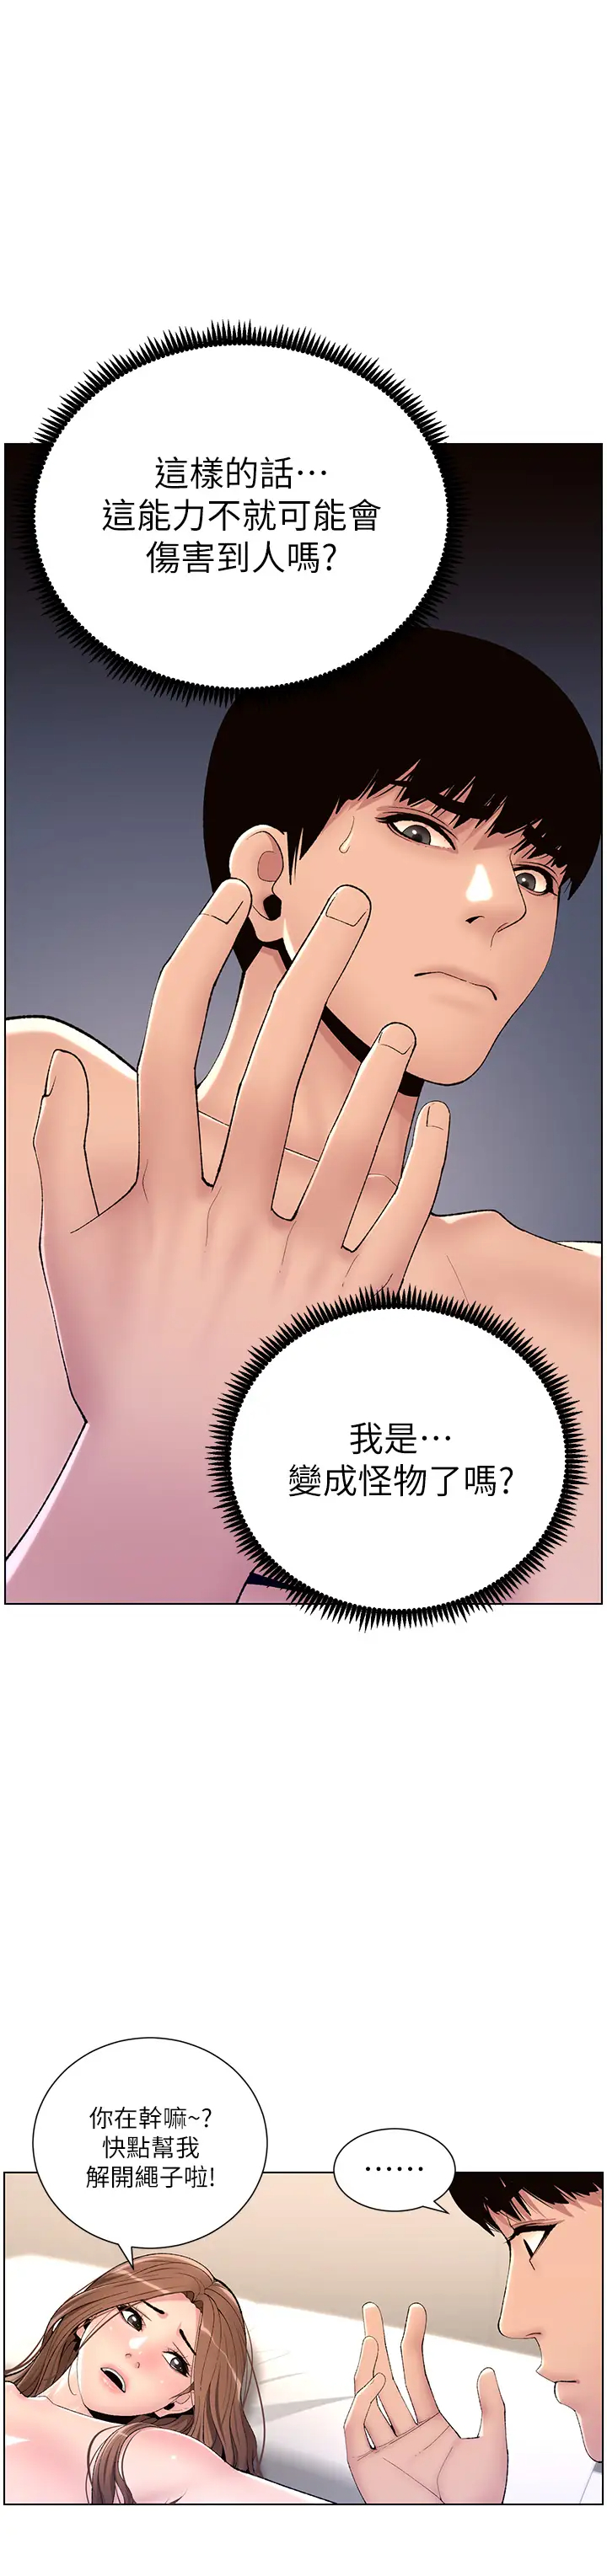 韩国污漫画 帝王App 第17话 被神之手玩到泛滥成灾 33